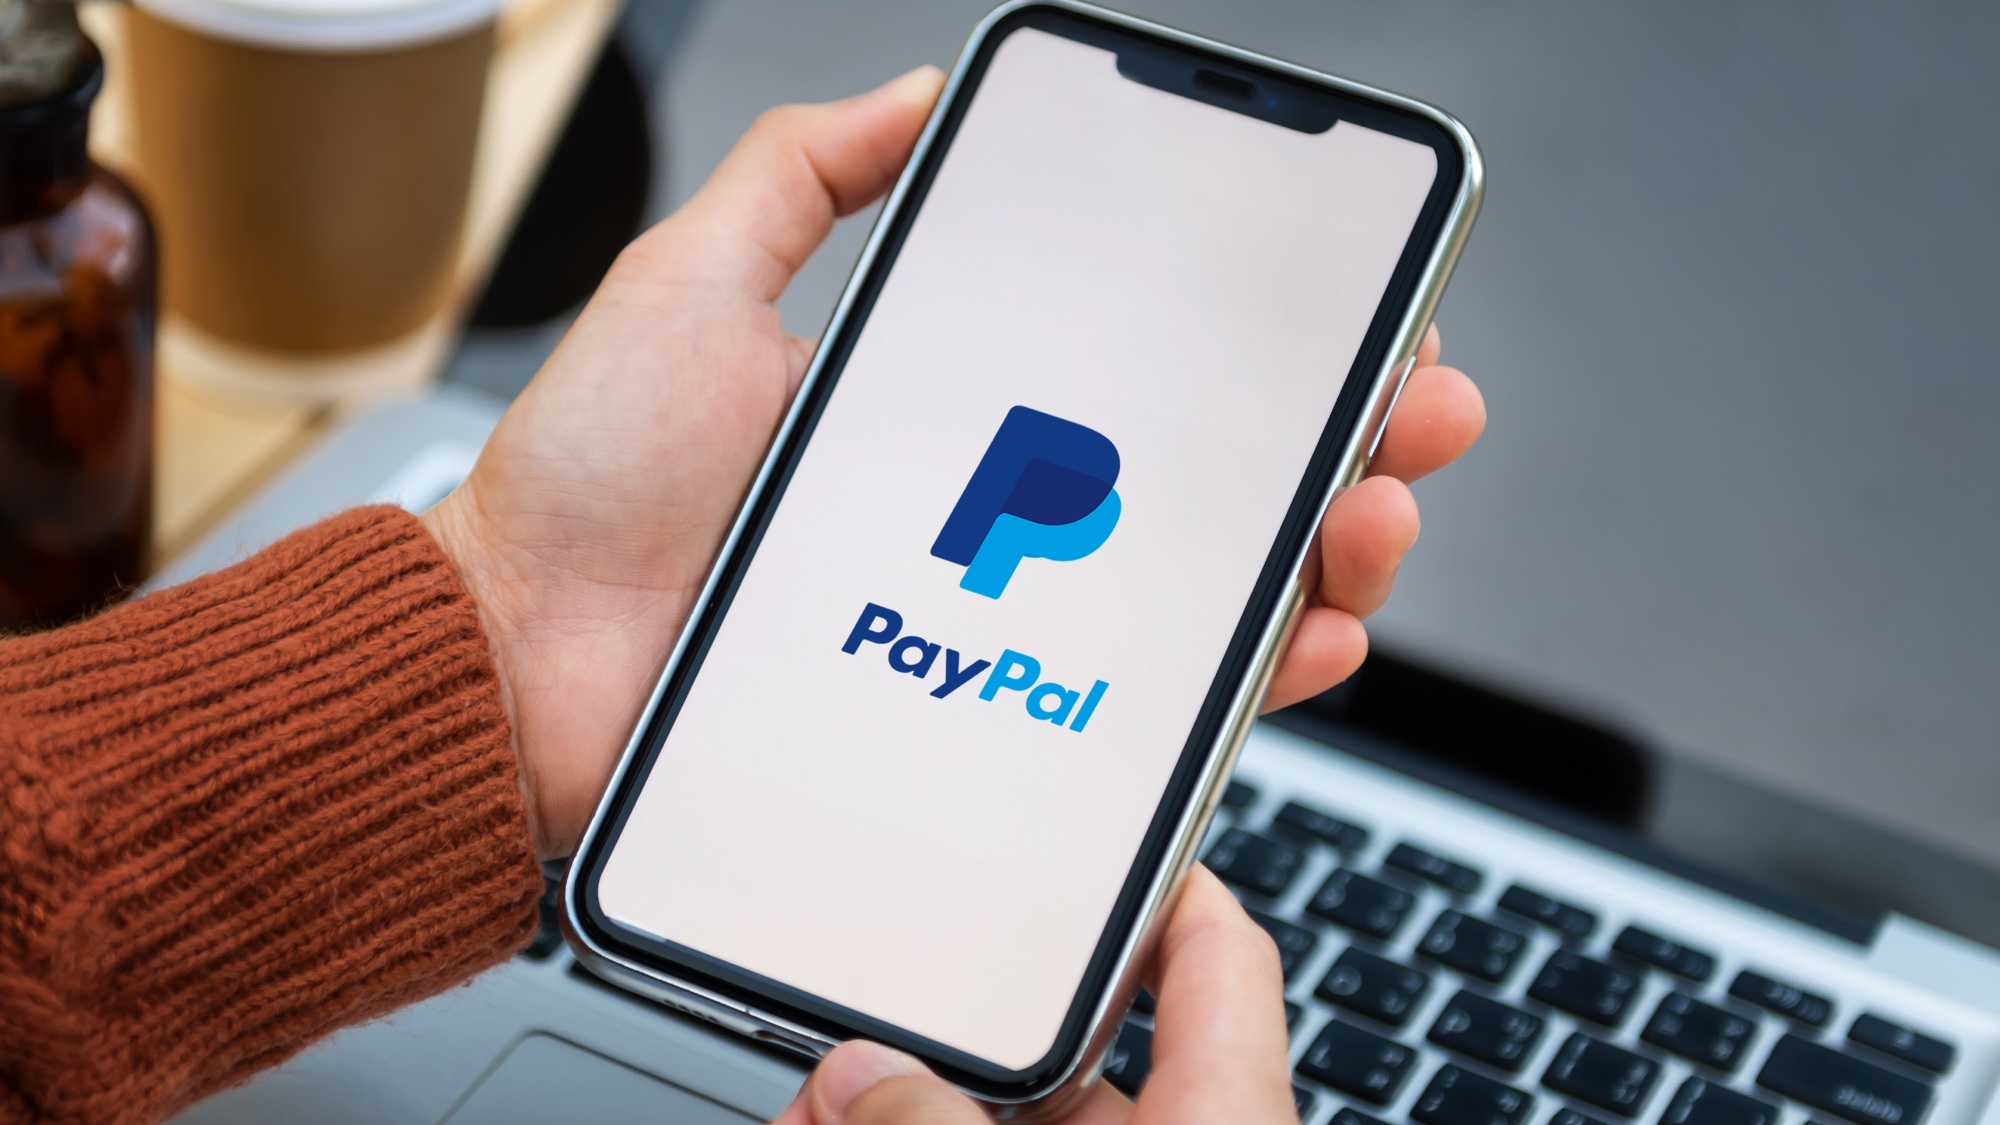 PyPal lance un nouveau service : le "Cryptocurrencies Hub"